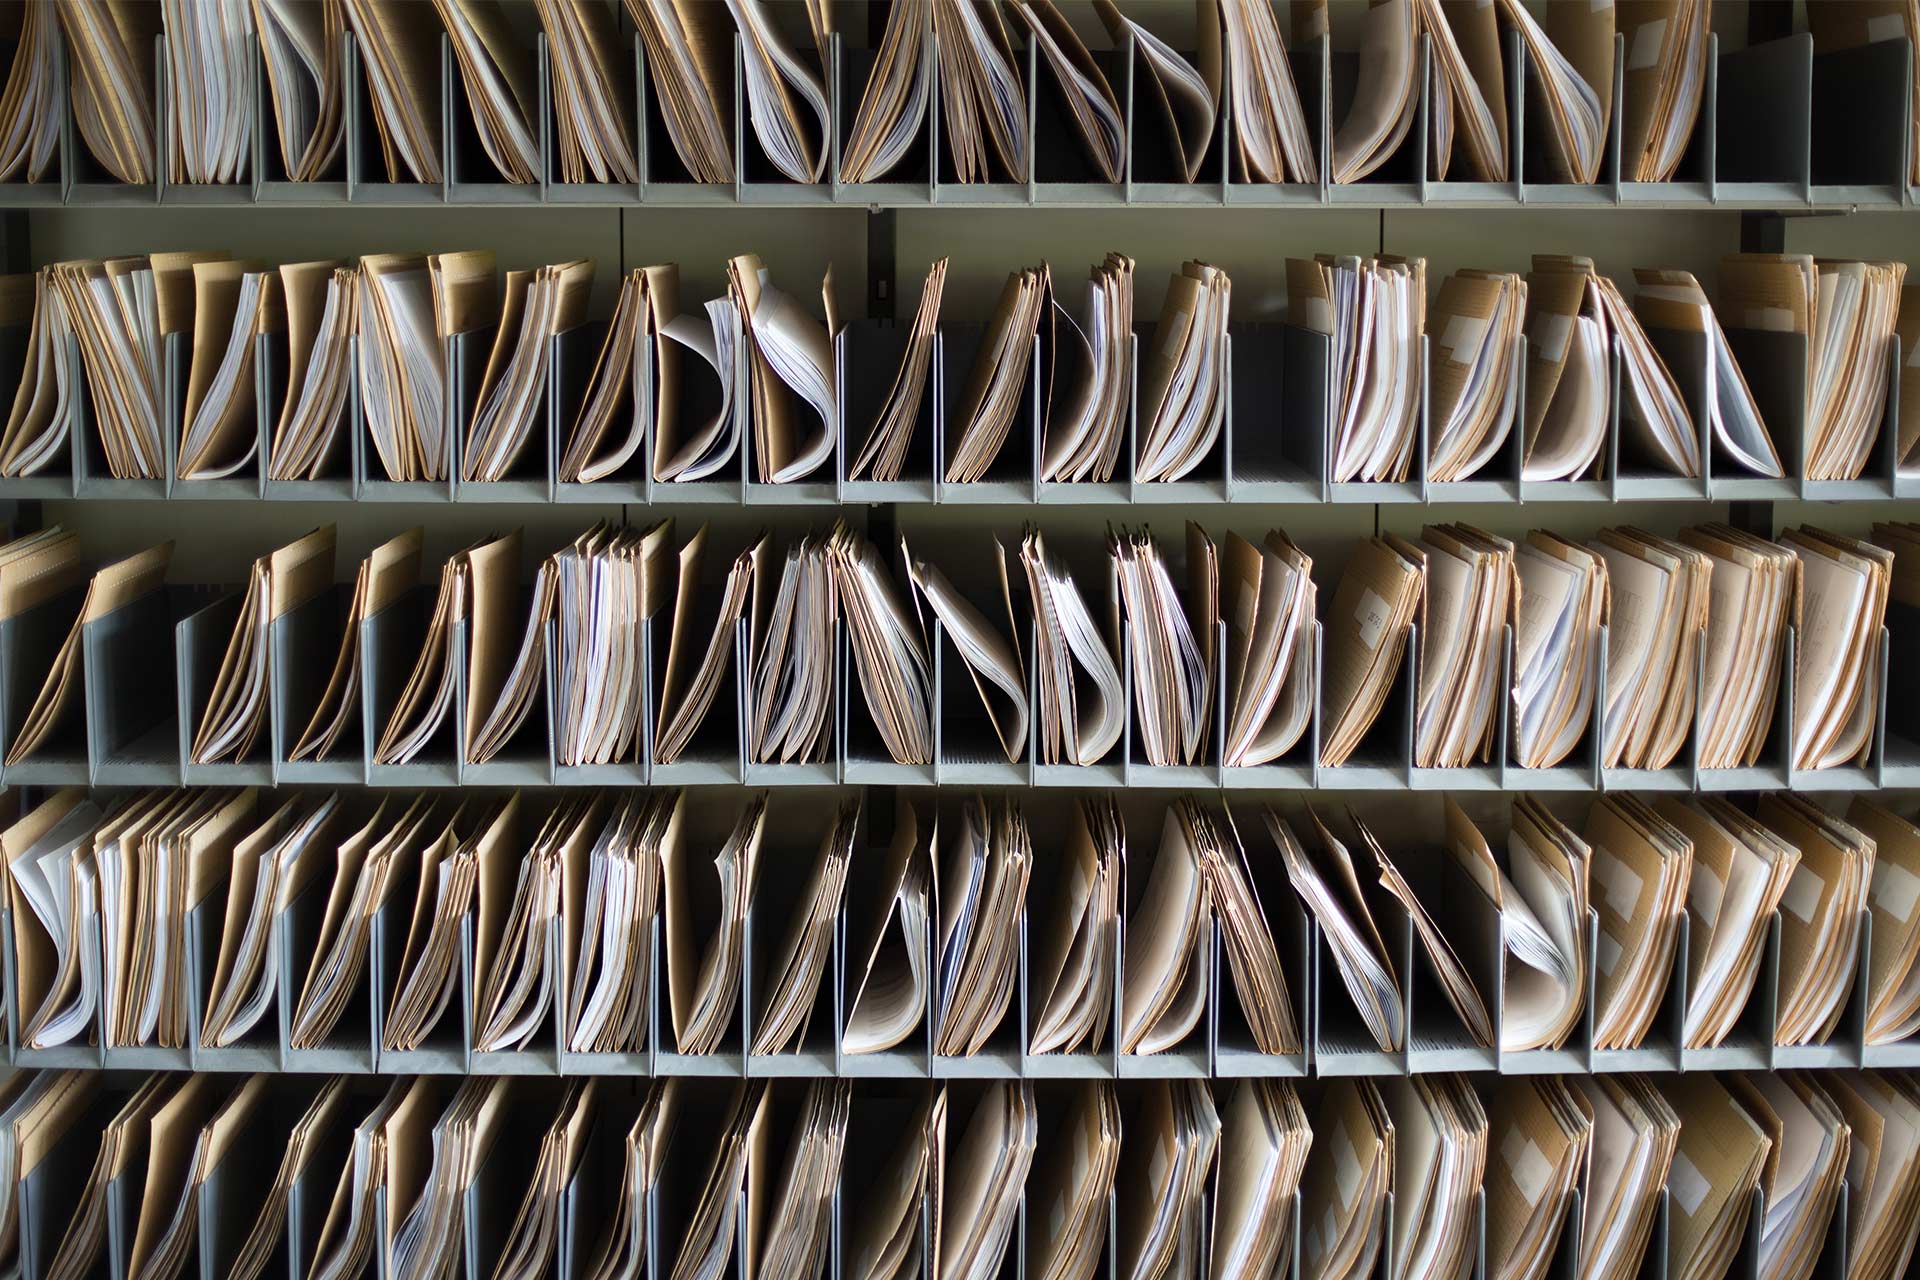 Rijen papieren documenten in mappen die zijn georganiseerd in compartimenten.